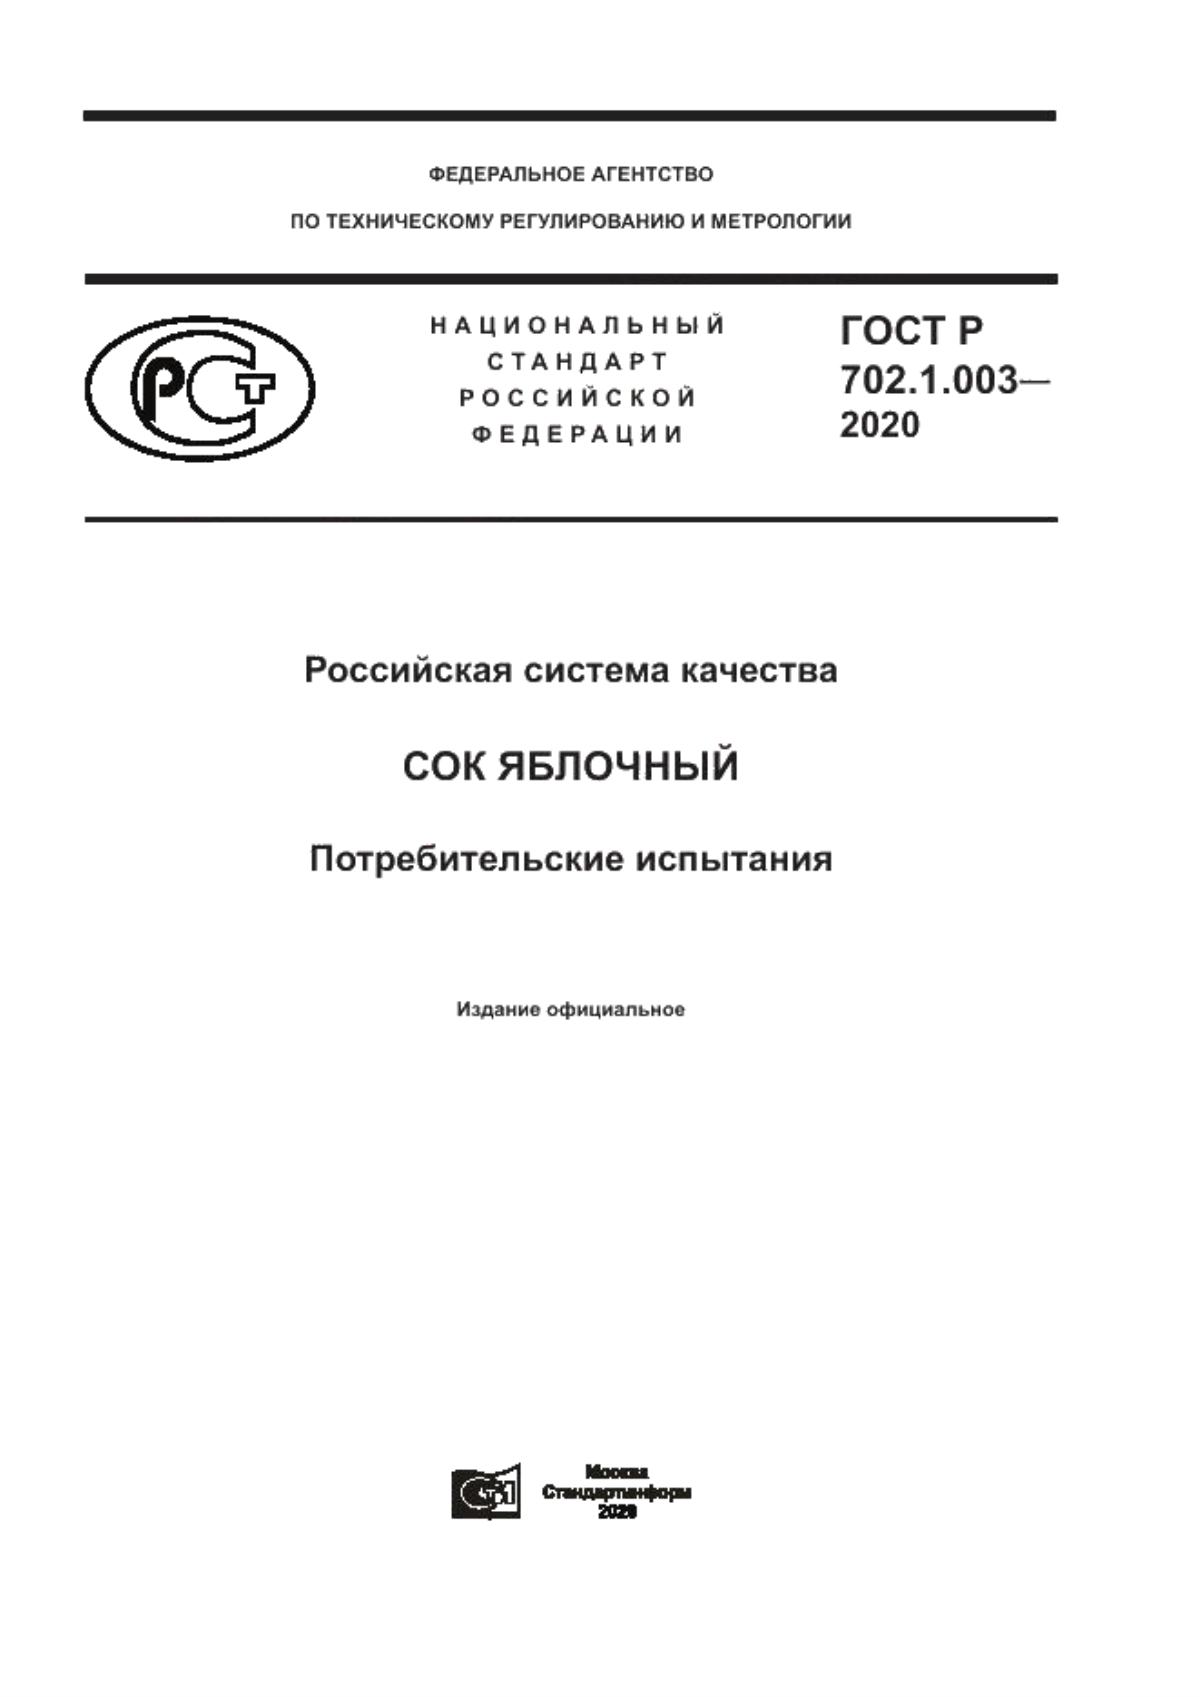 ГОСТ Р 702.1.003-2020 Российская система качества. Сок яблочный. Потребительские испытания